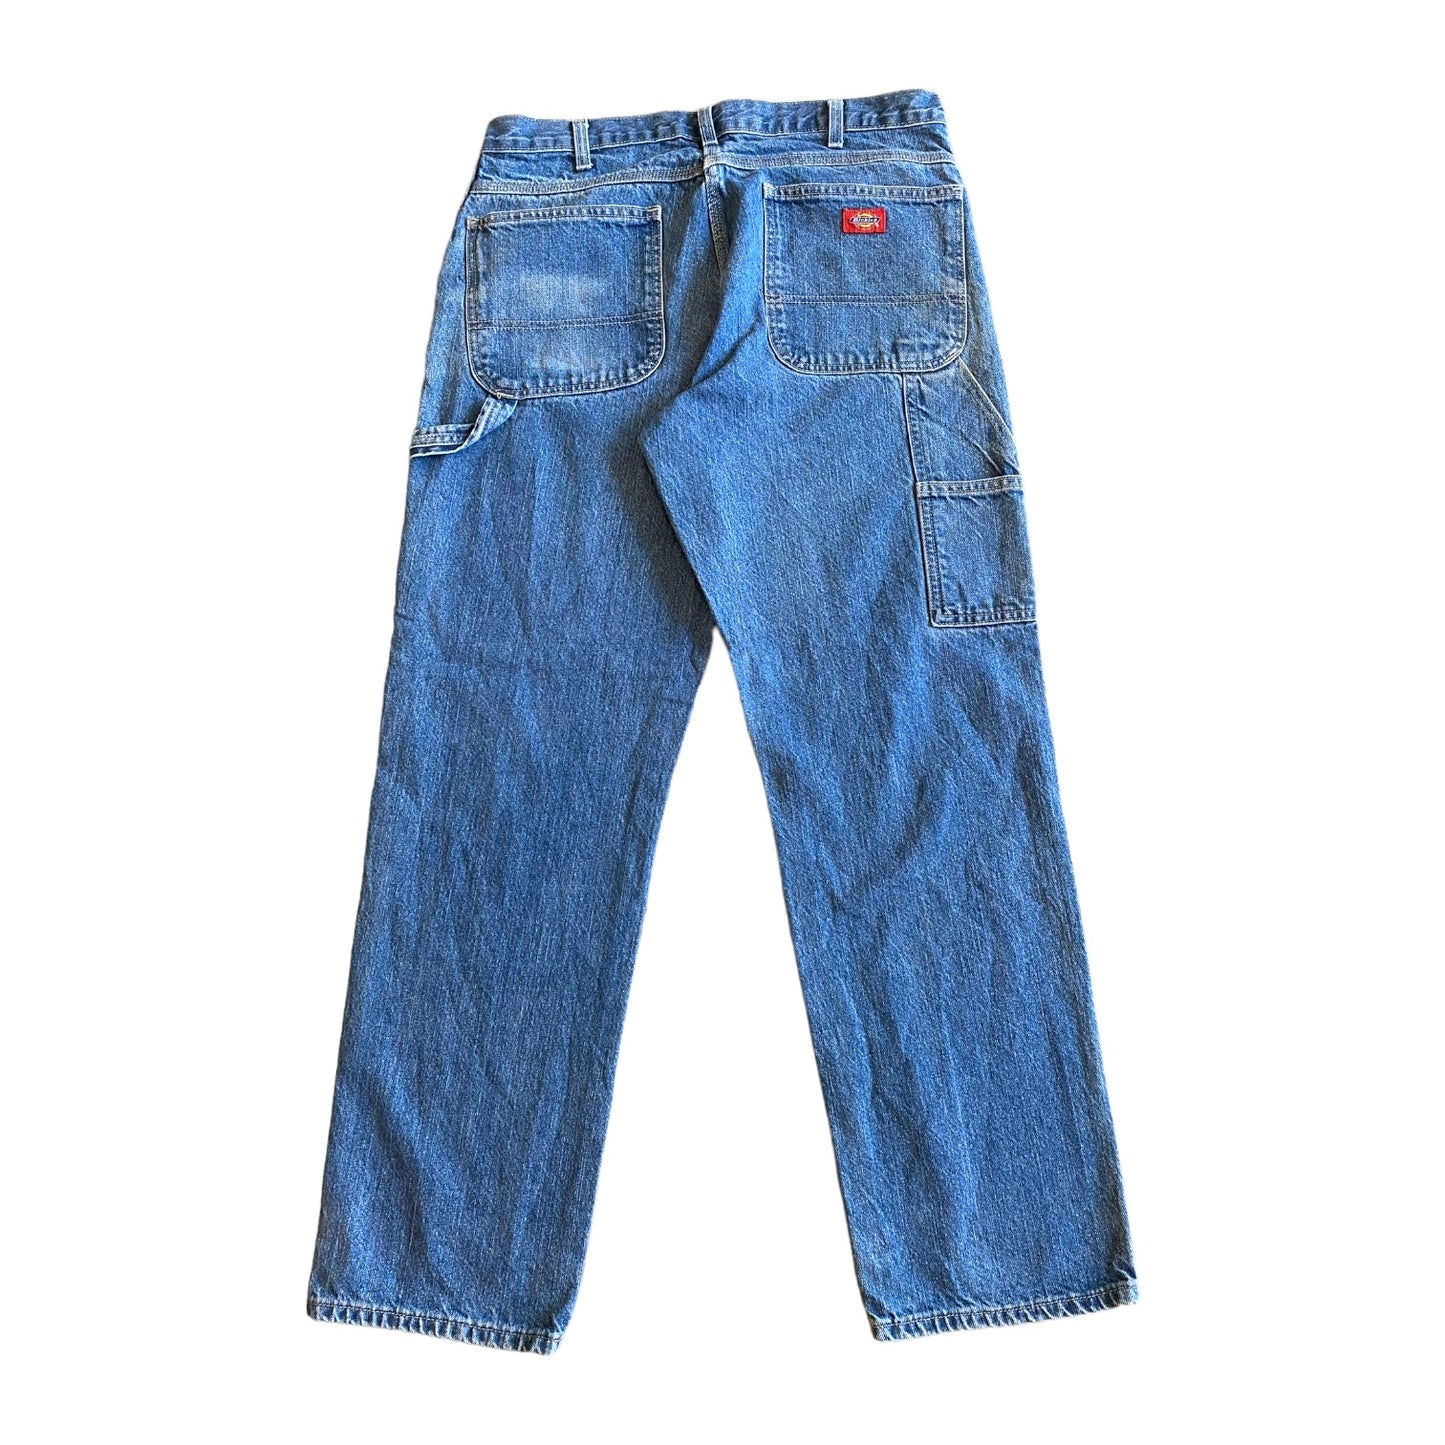 Dickies Carpenter Vintage Jeans